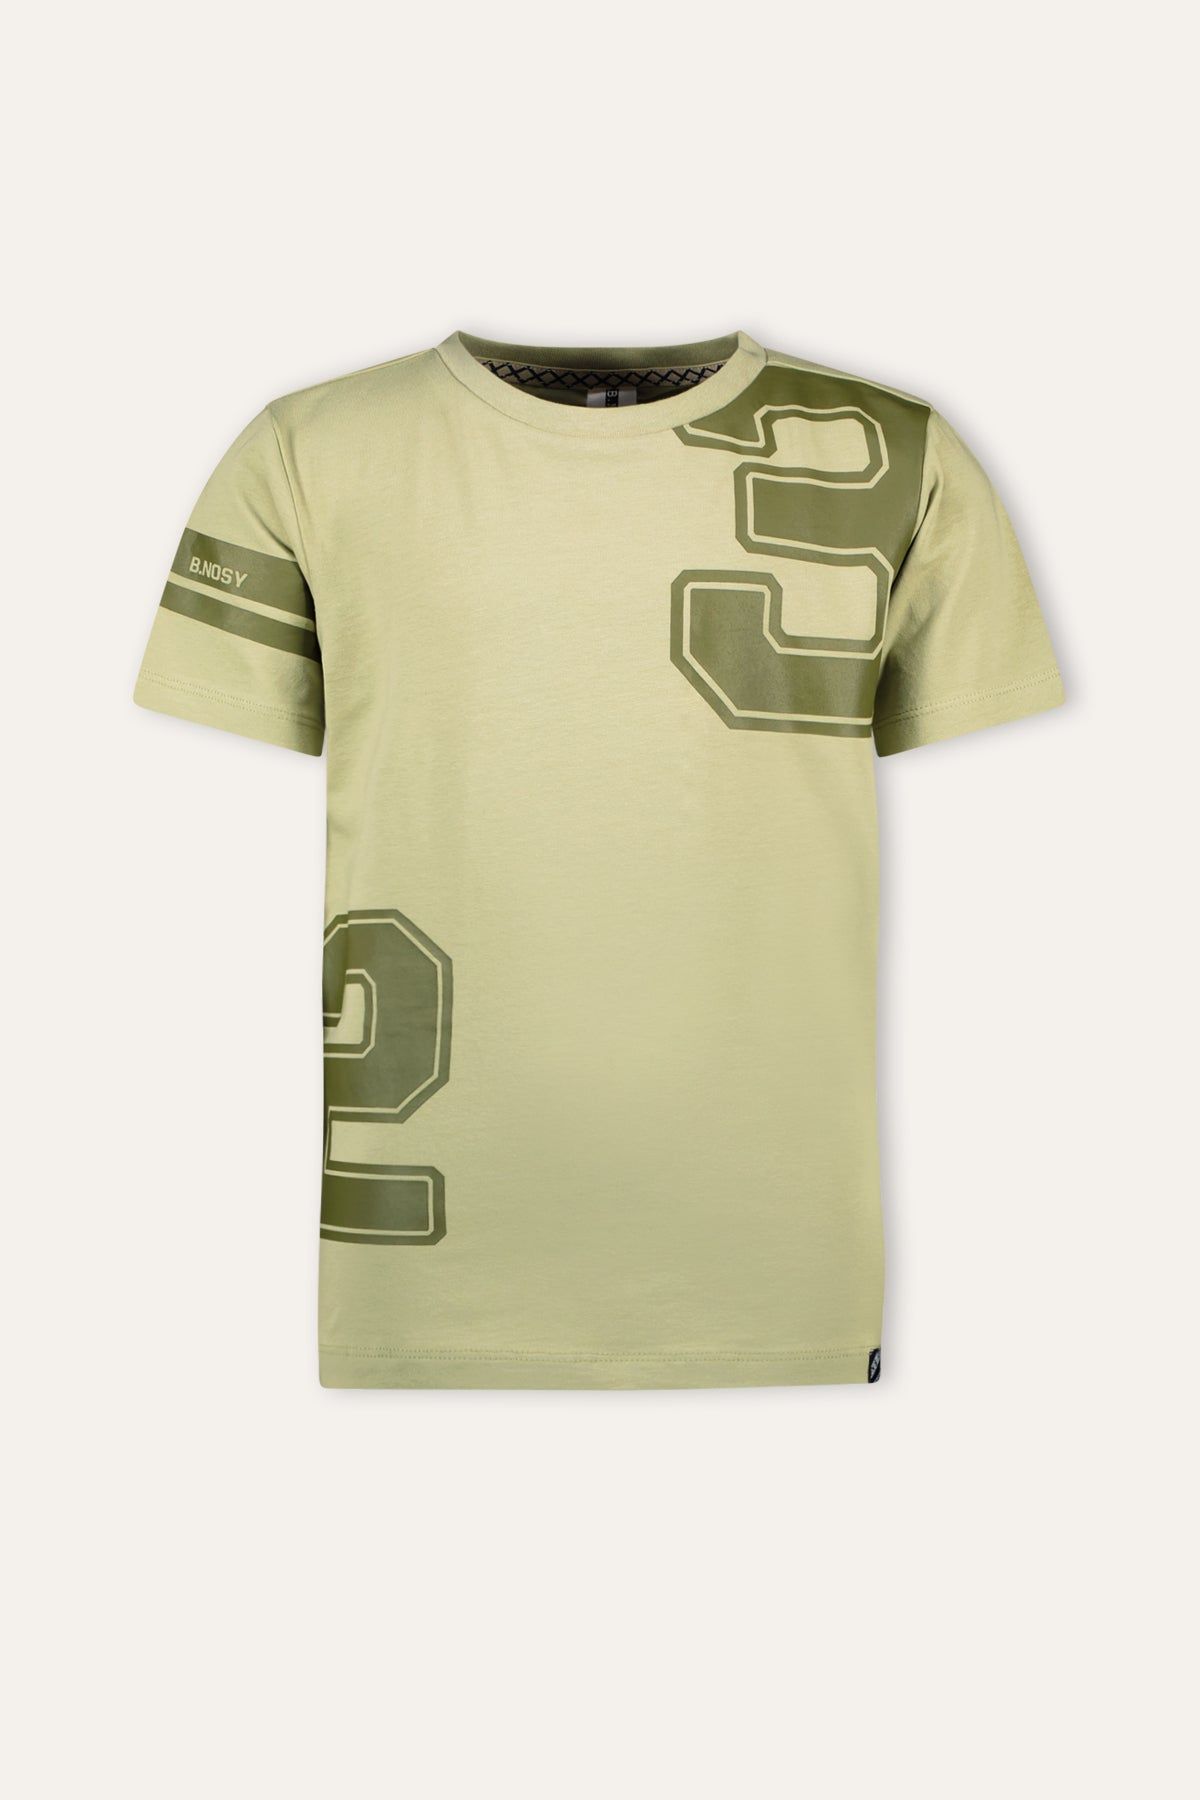 T-Shirt Puk B.Nosy boys t-shirt groen